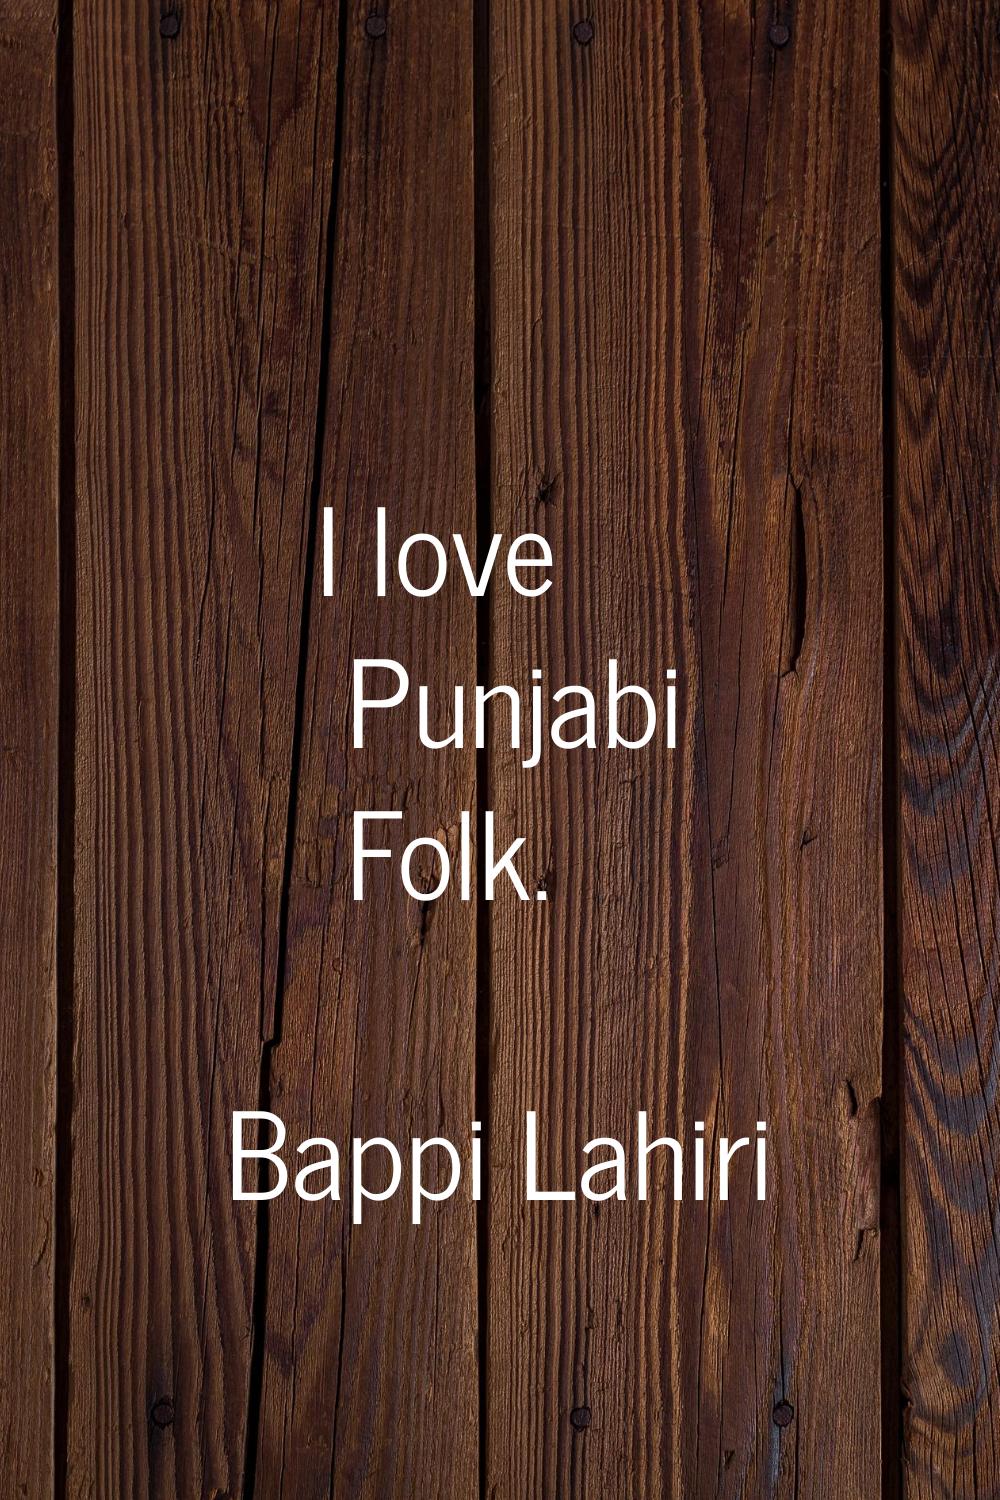 I love Punjabi Folk.